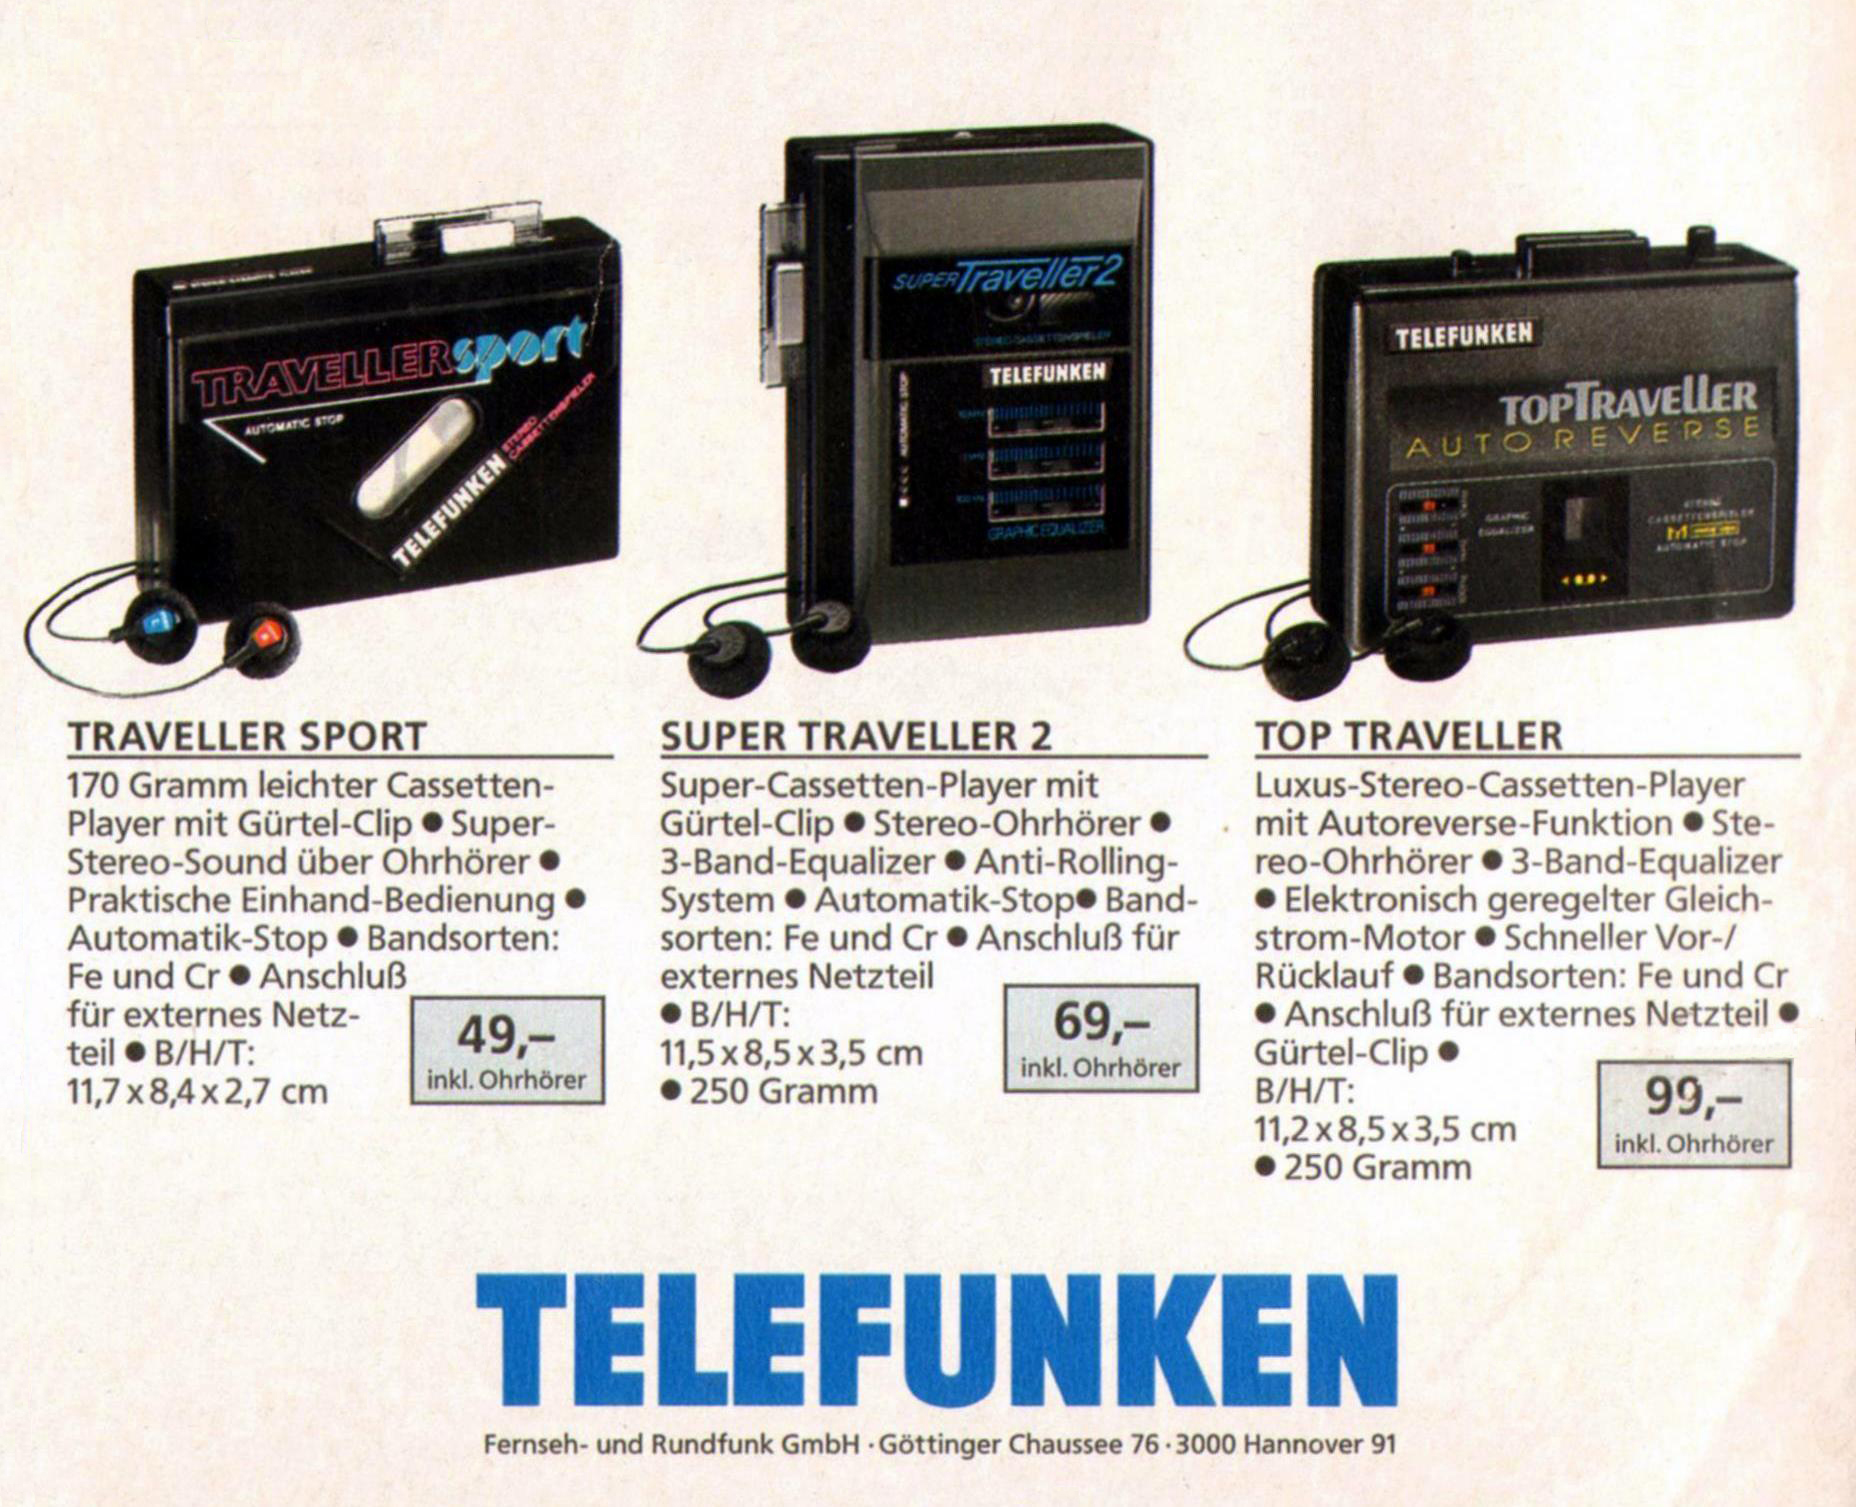 Telefunken Traveller Sport-Prospekt-1990.jpg